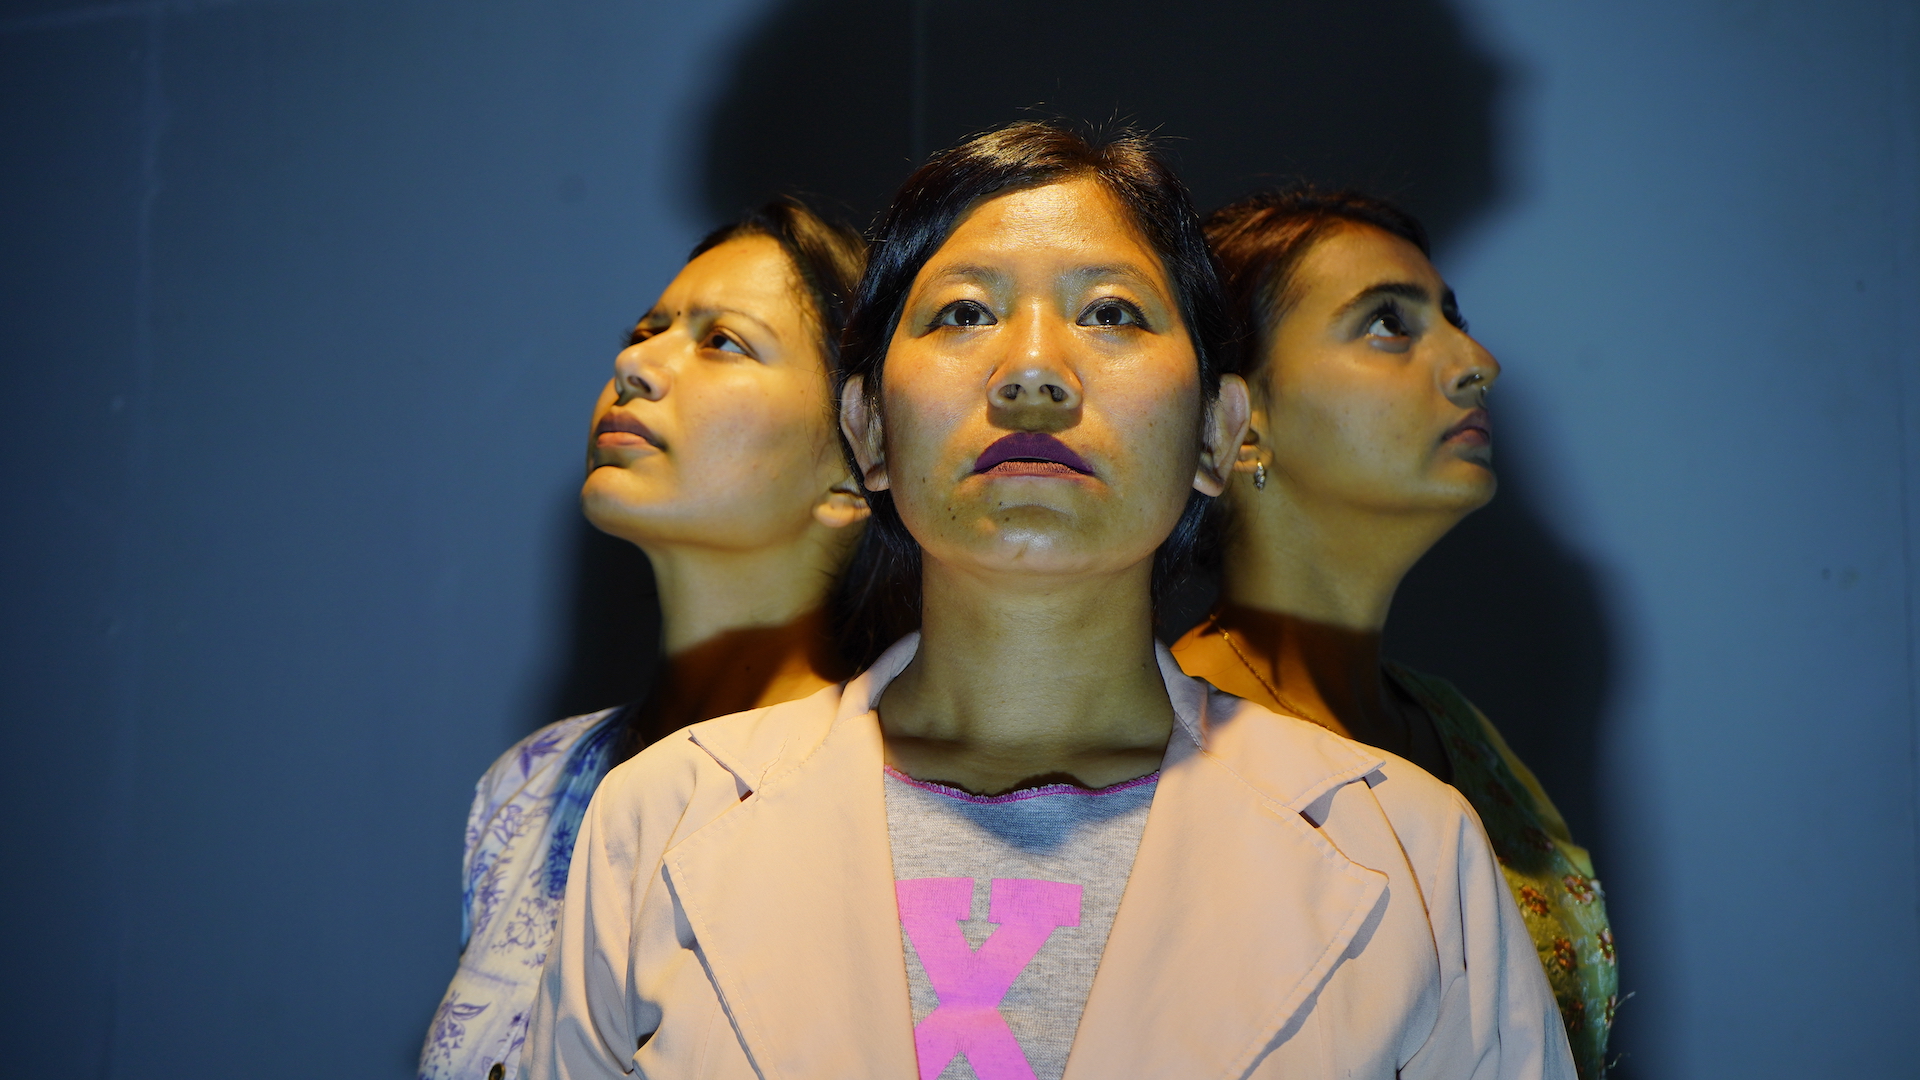 दिलिप रानाभाटको निर्देशनमा तीन युवतीको कथा ‘त्रयम्’ मञ्चन हुँदै